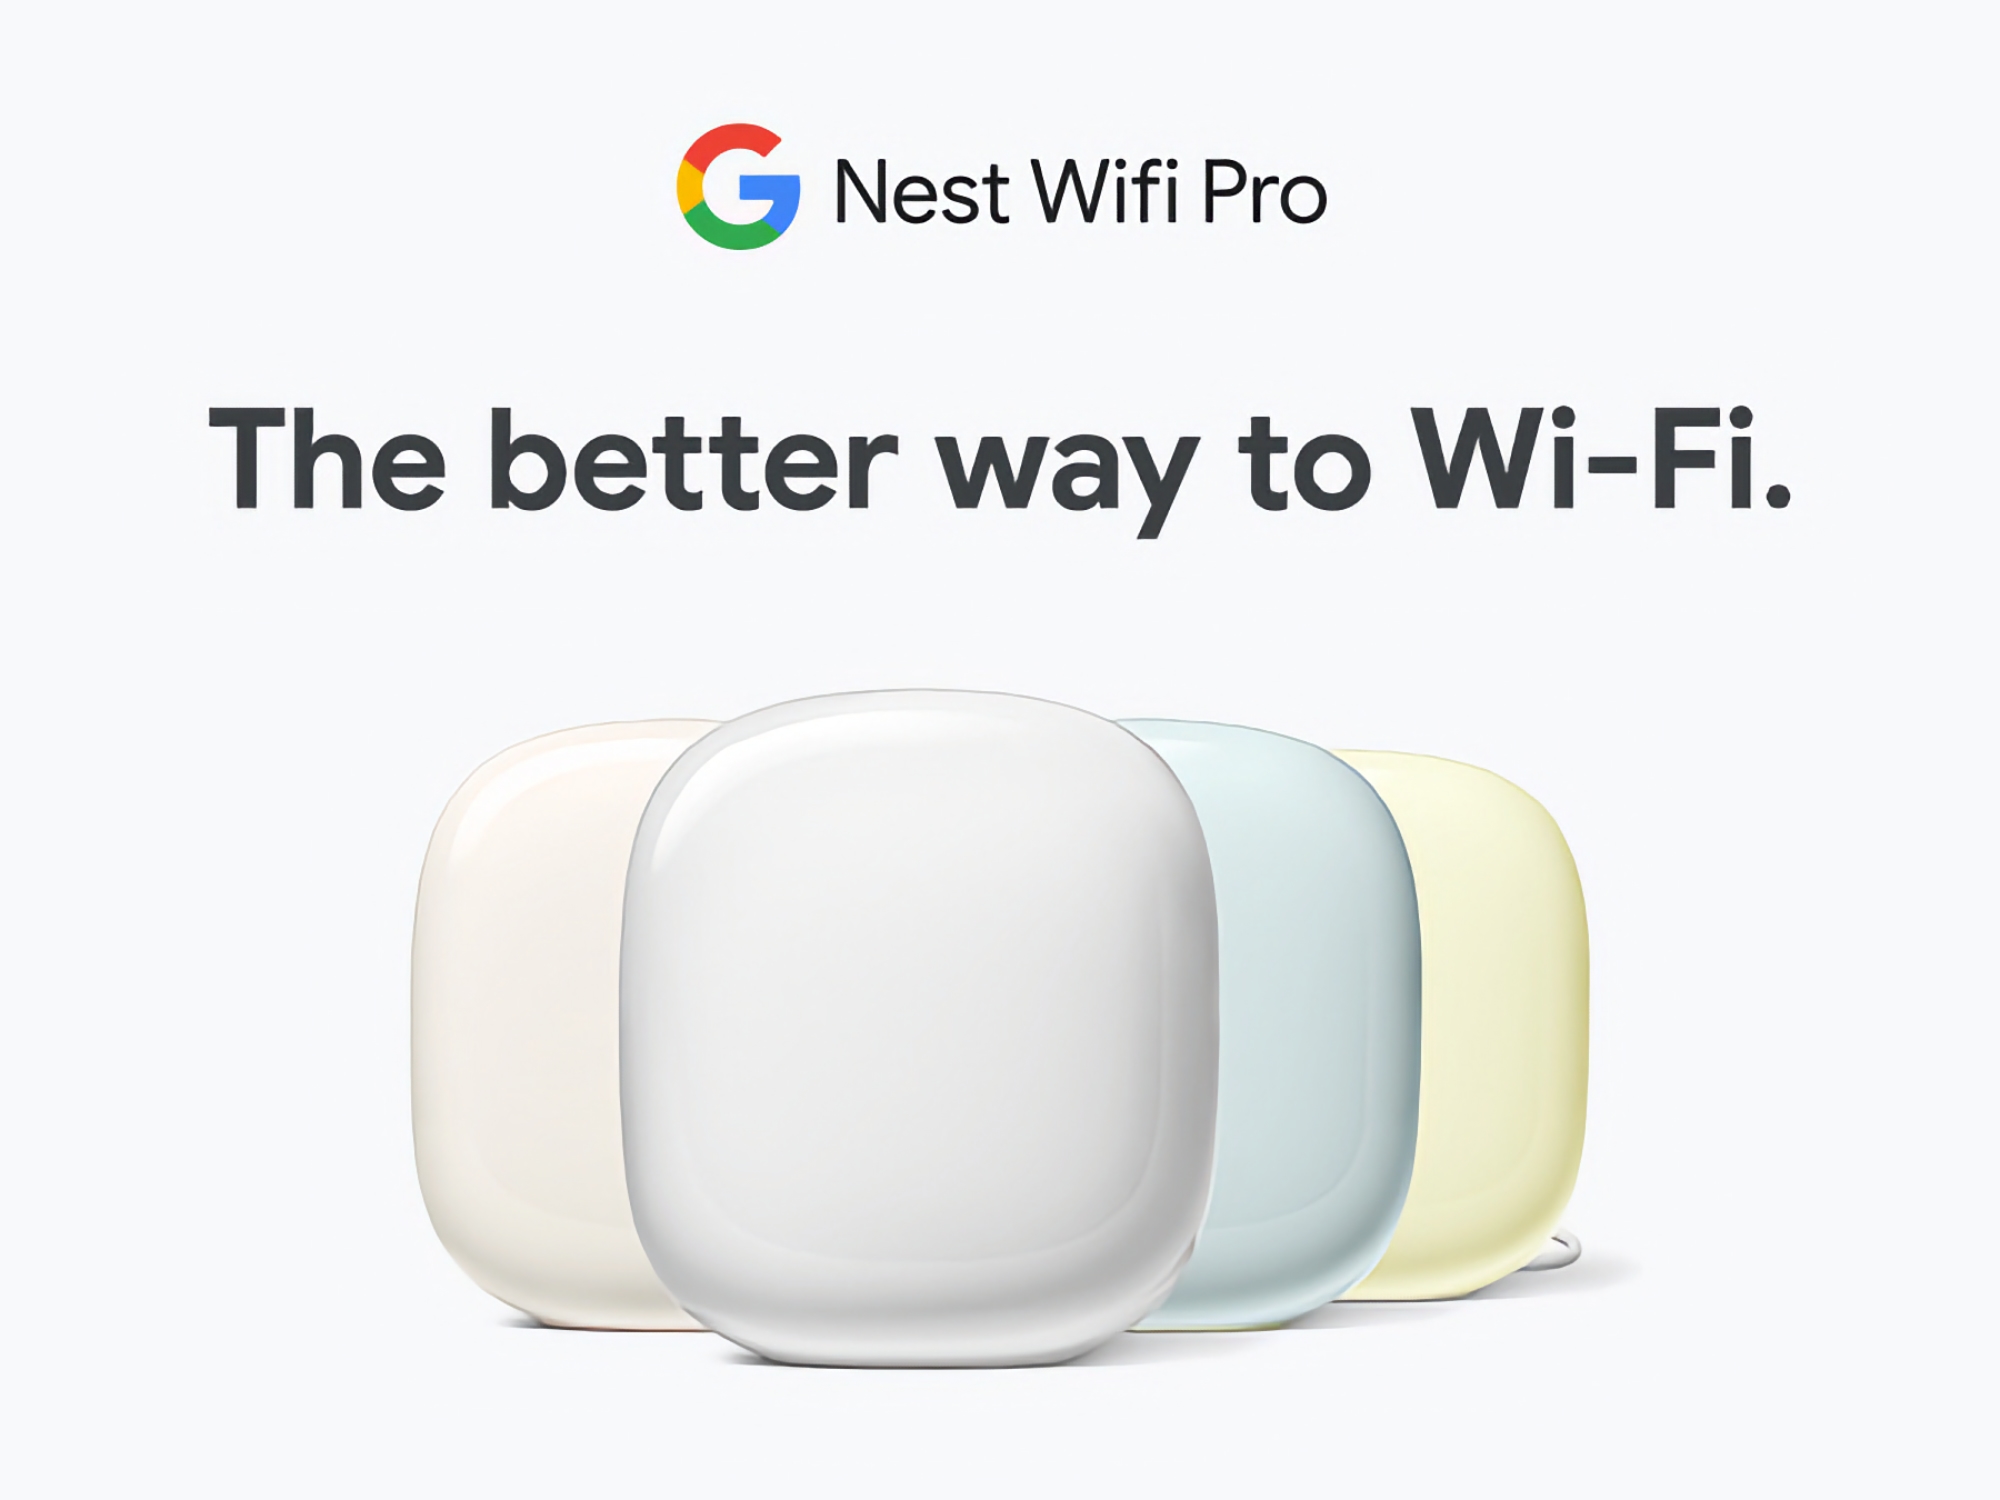 Google Nest WiFi Pro met tri-band en Wi-Fi 6E beschikbaar op Amazon voor tot 60 dollar korting.